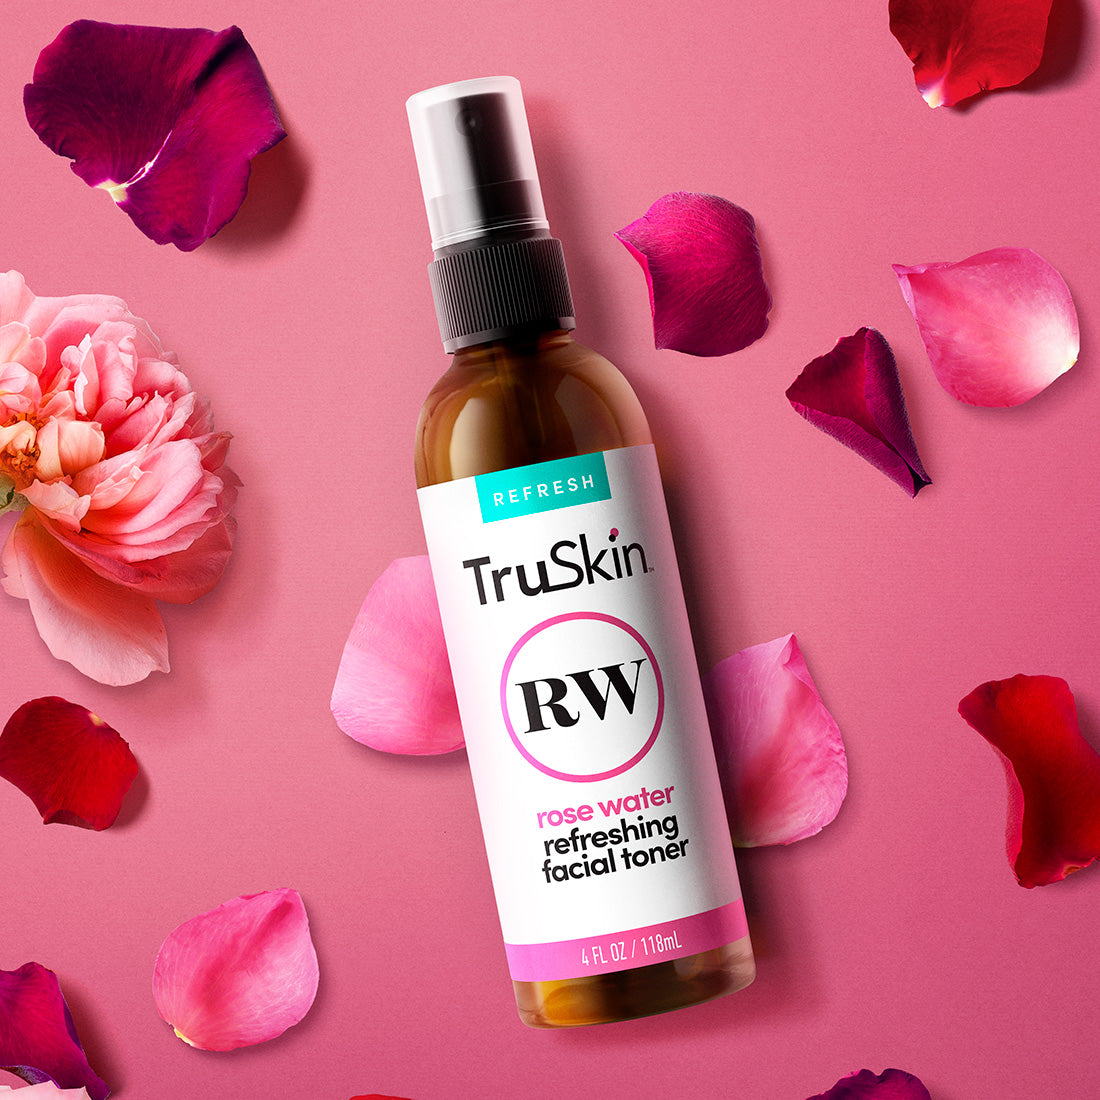 TruSkin Rose Water Refreshing Facial Toner